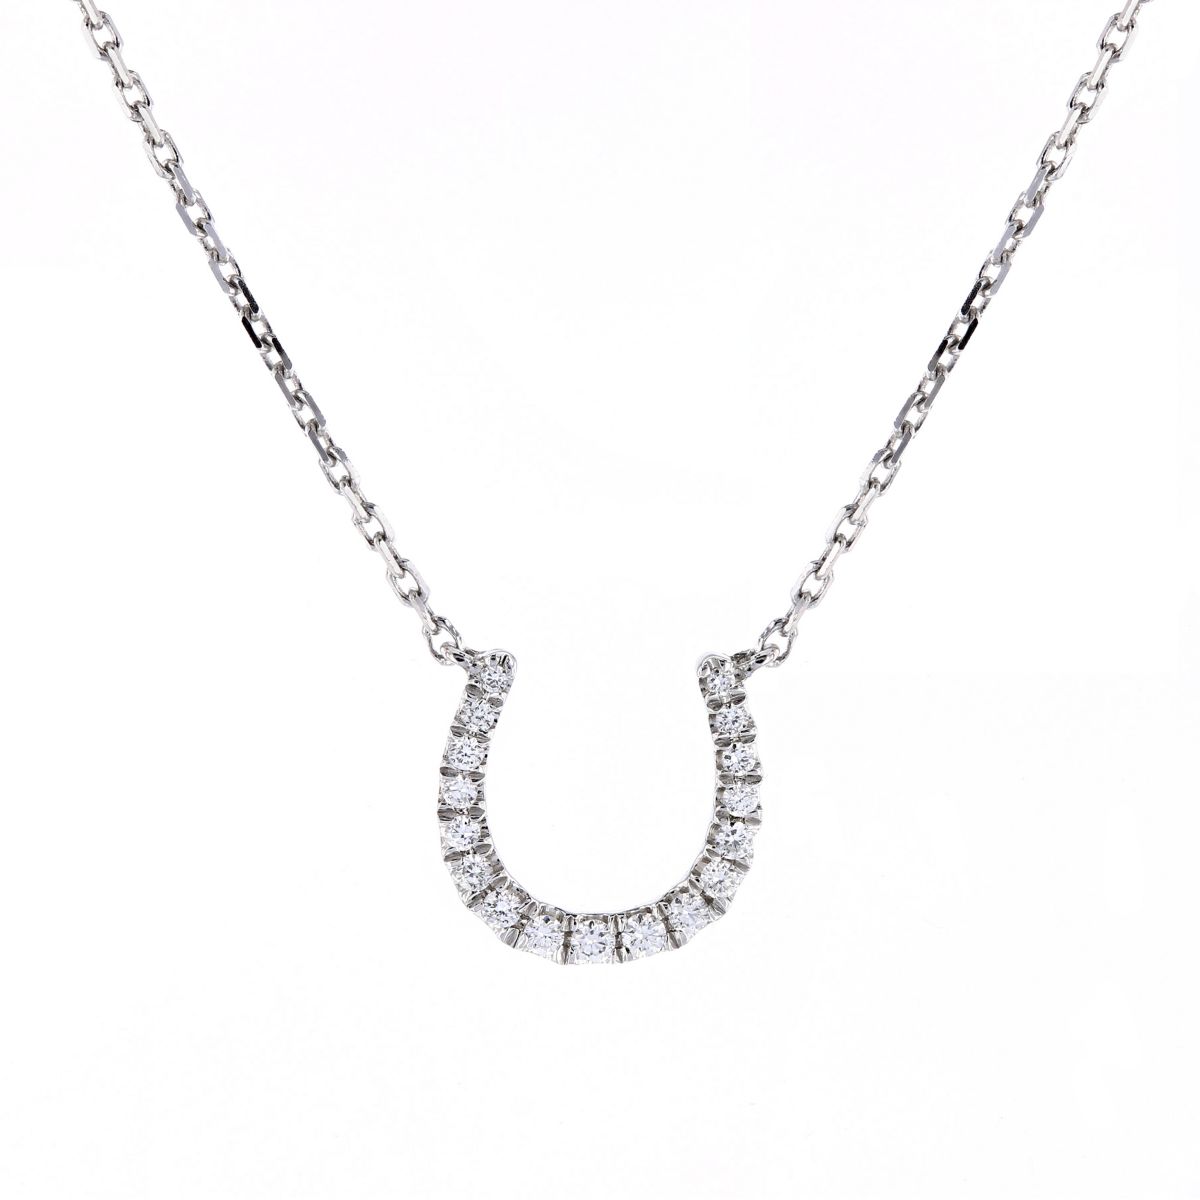 14K White Gold Diamond Horseshoe Necklace, 16